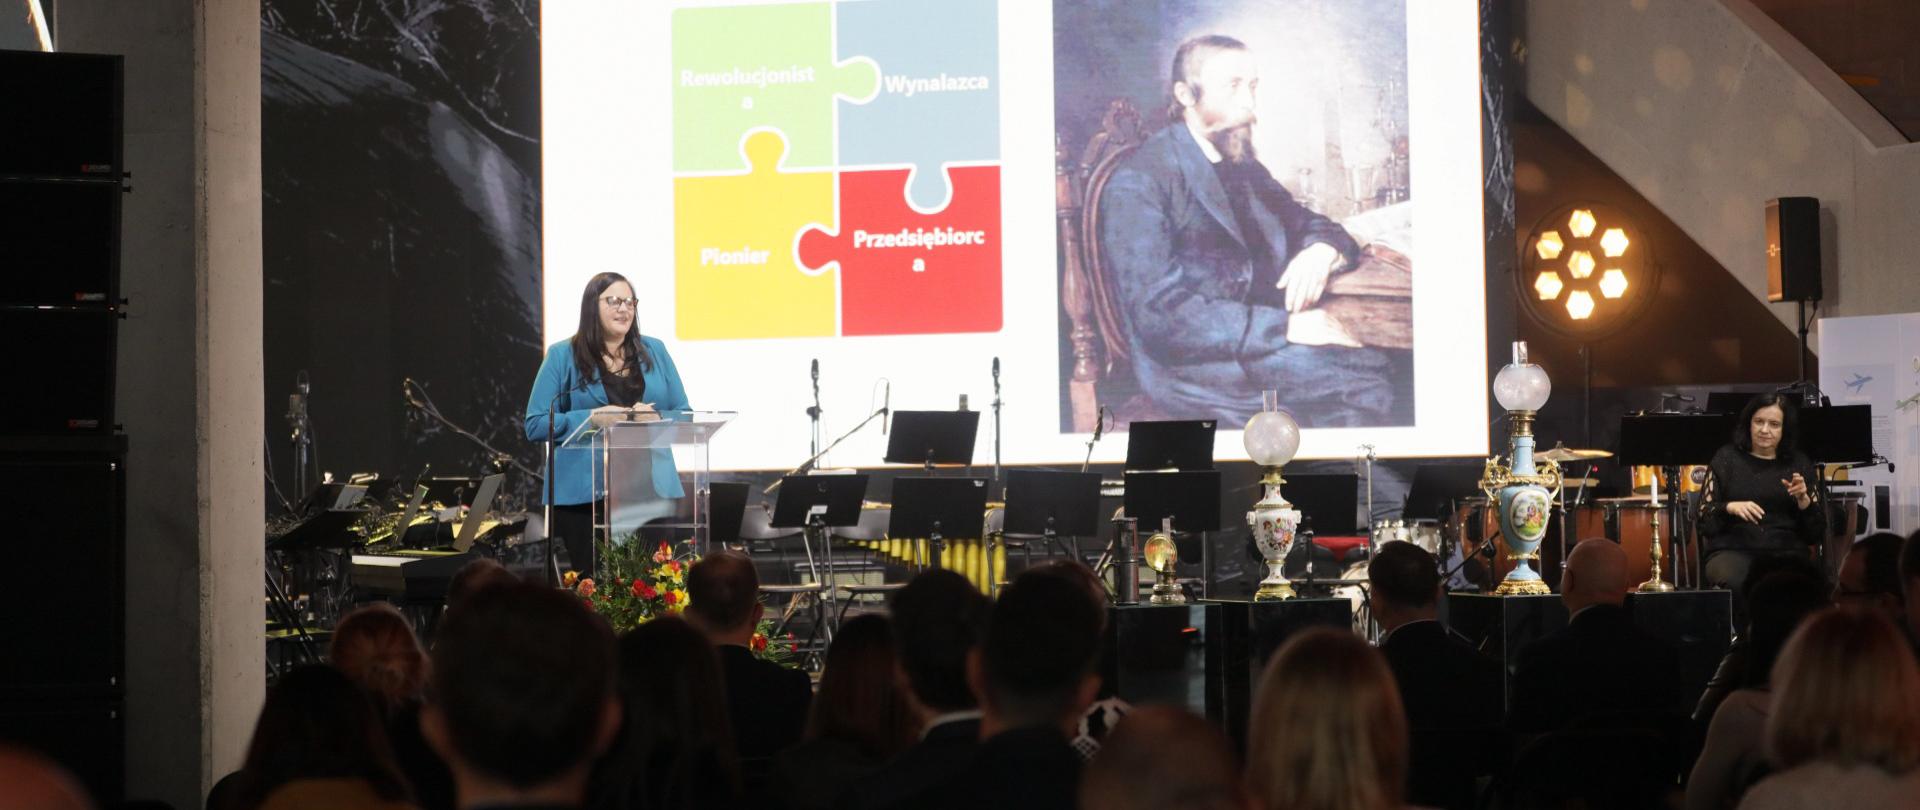 Wiceminister Małgorzata Jarosińska-Jedynak na scenie w mównicy. Przed nią publiczność.